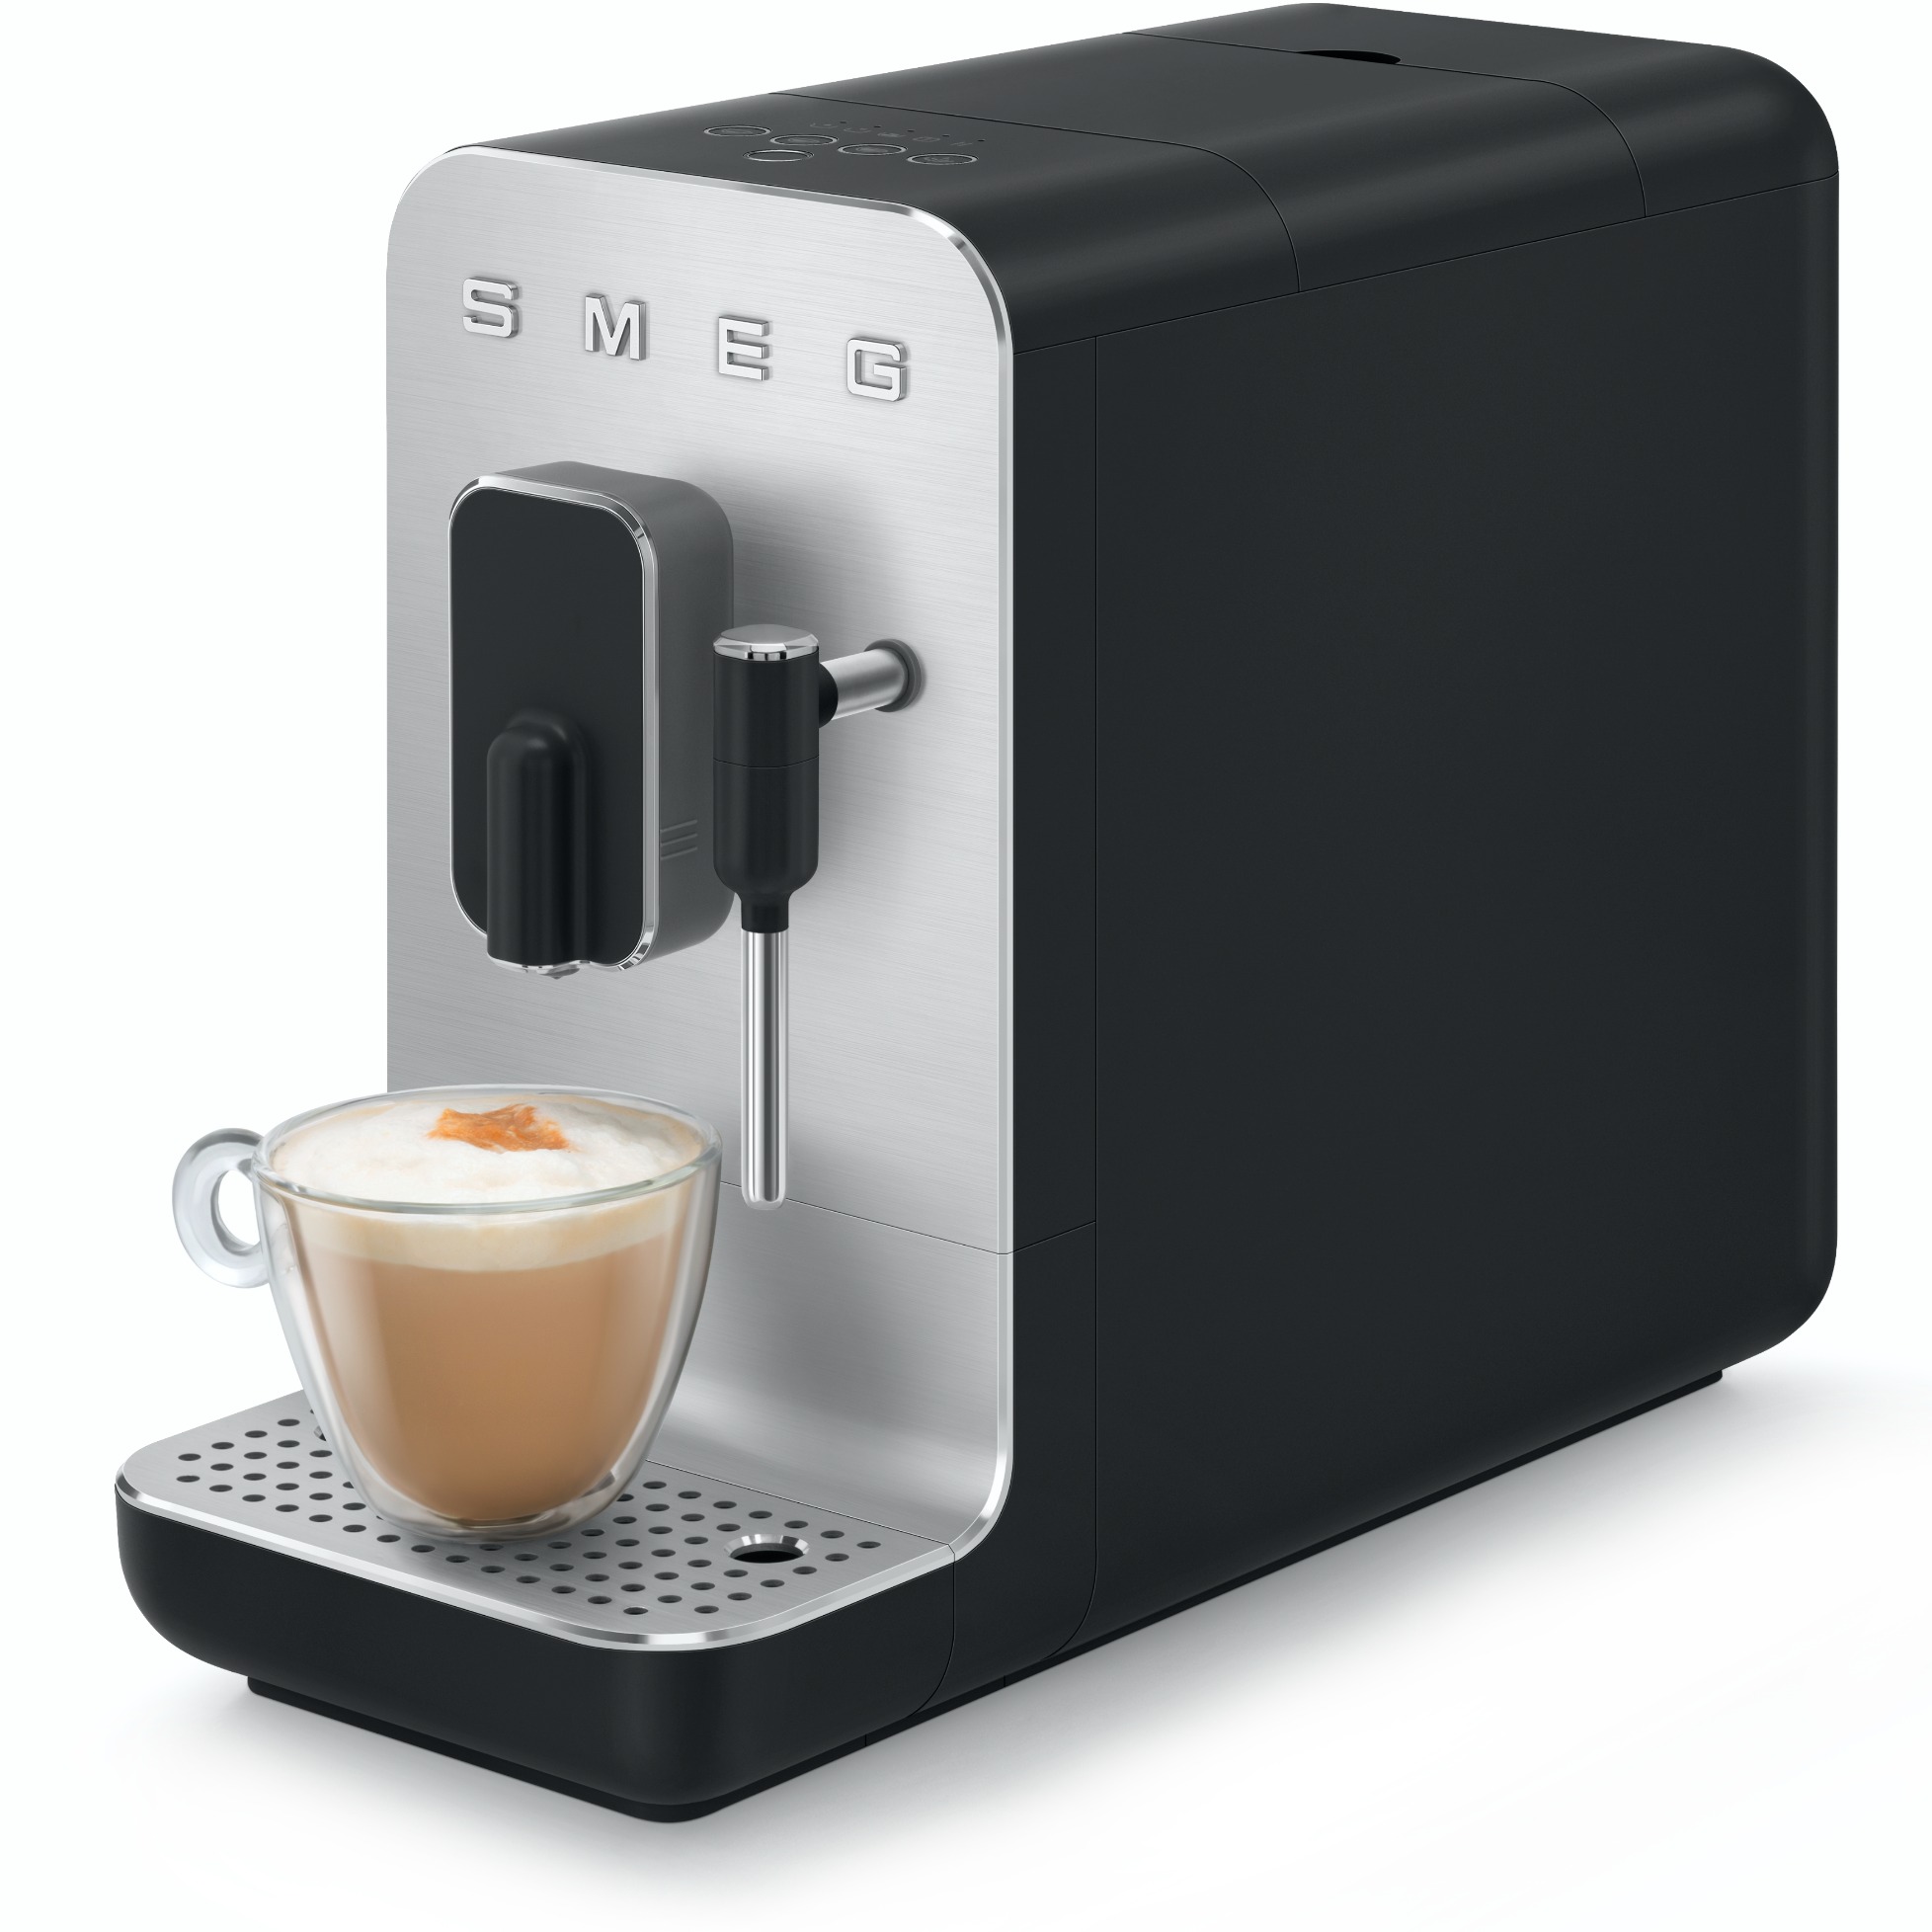 http://static.dieter-horn.de/images/produkte/smeg/smeg-bcc02-kaffeevollautomat-RpX0I4dlQ505PFp.jpg